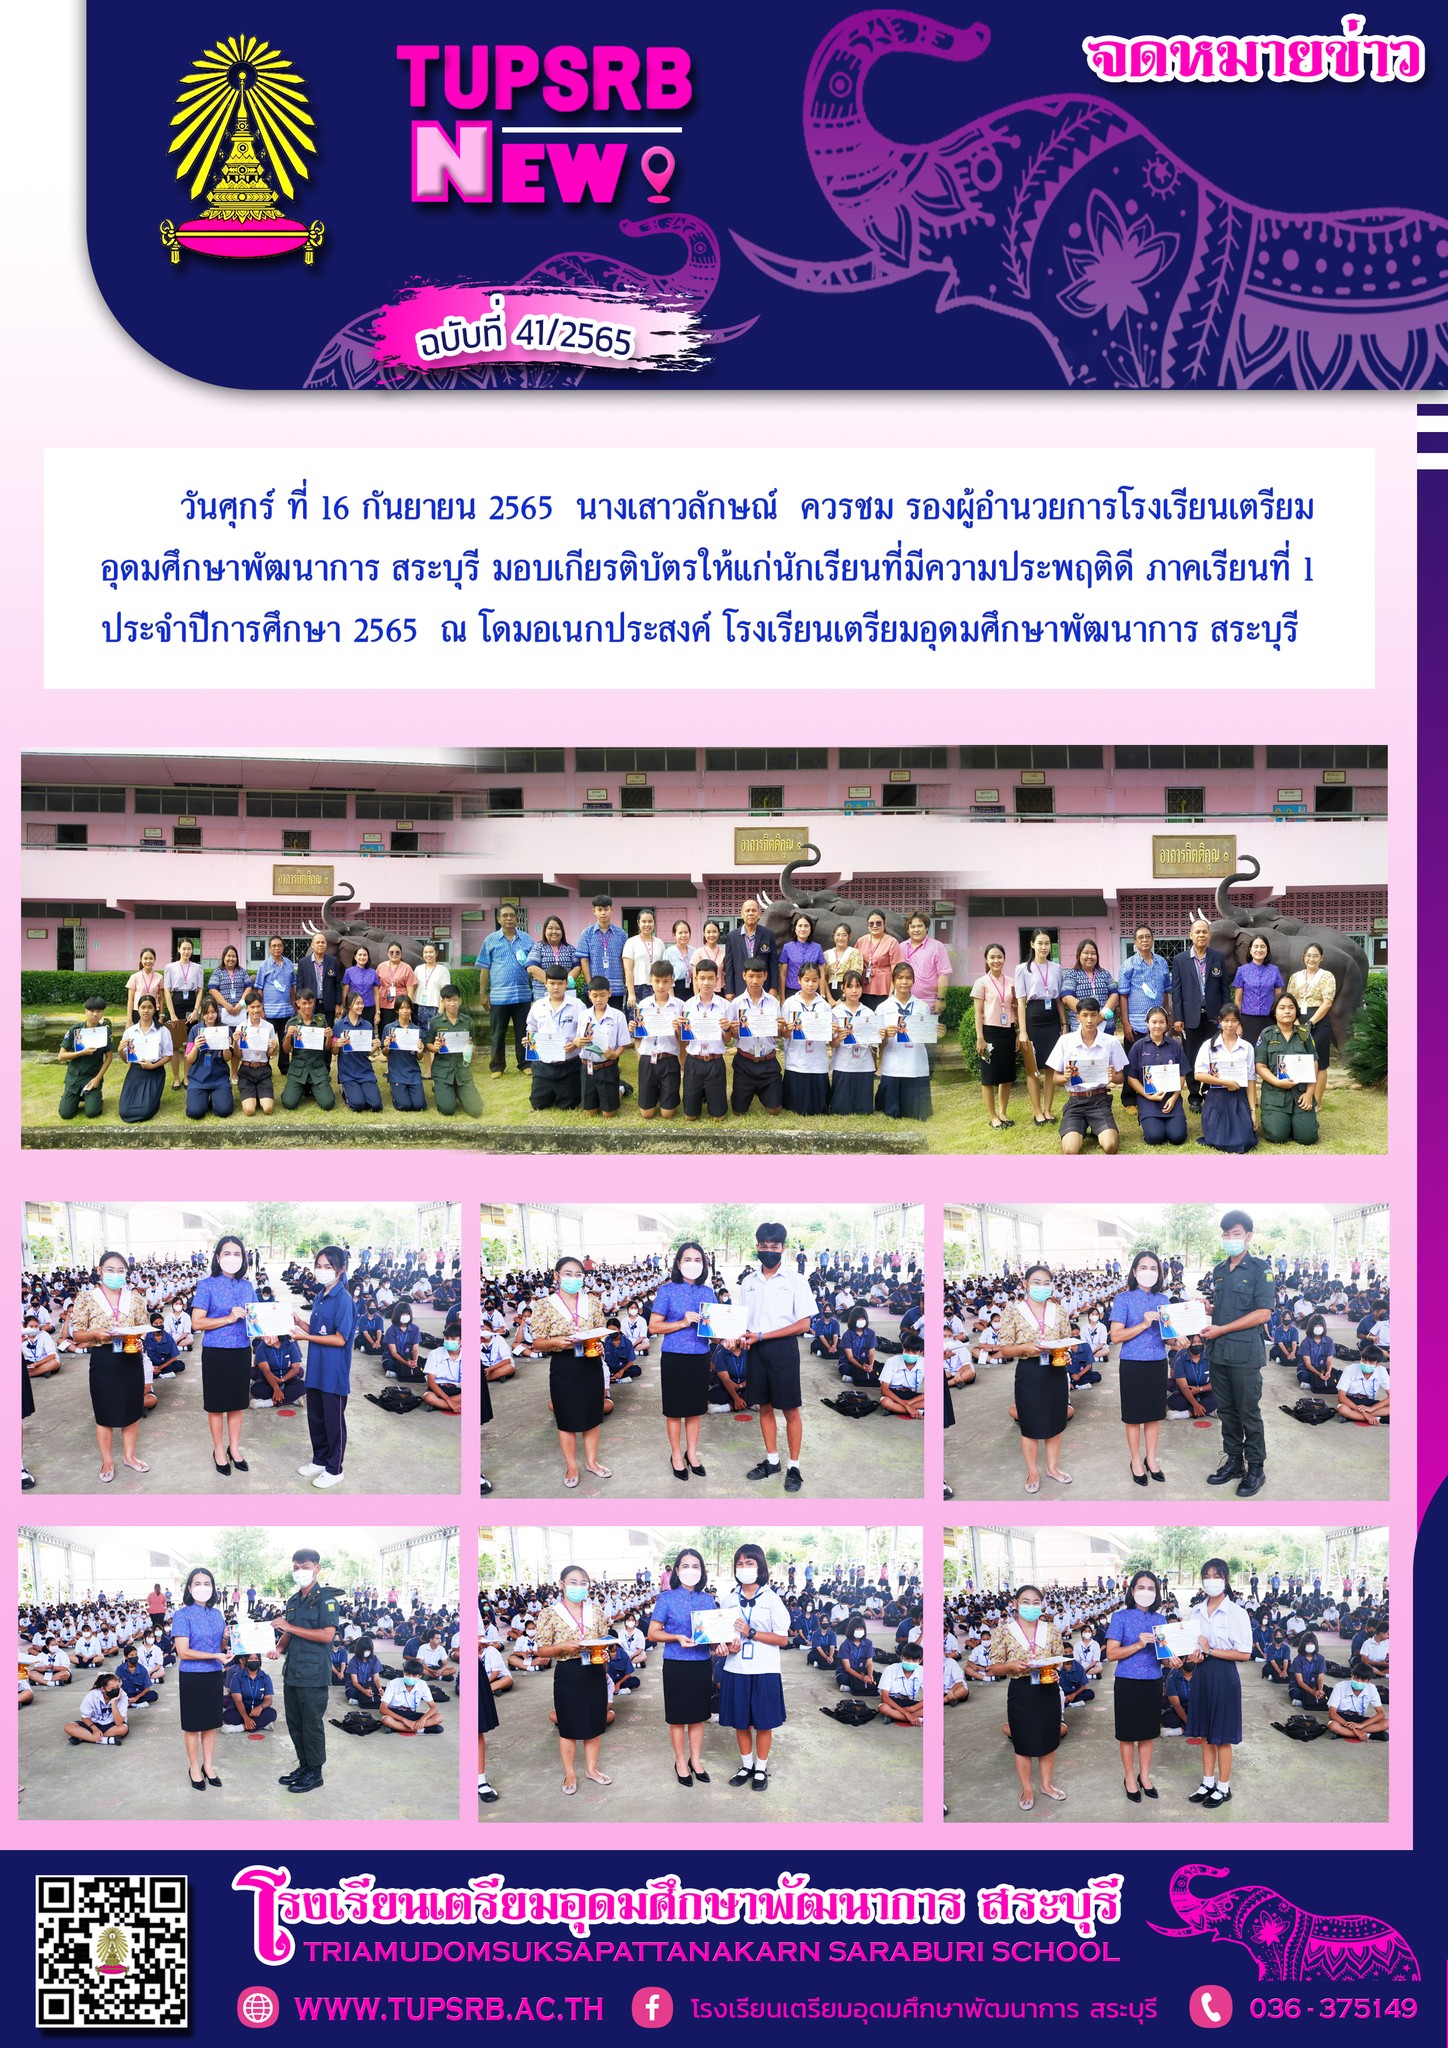 วันศุกร์ ที่ 16 กันยายน 2565 นางเสาวลักษณ์ ควรชม รองผู้อำนวยการ โรงเรียนเตรียมอุดมศึกษาพัฒนาการ สระบุรี มอบเกียรติบัตรให้แก่นักเรียนที่มีความประพฤติดี ภาคเรียนที่ 1 ประจำปีการศึกษา 2565 ณ โดมอเนกประสงค์ โรงเรียนเตรียมอุดมศึกษาพัฒนาการ สระบุรี ภาพ : ปัญญา กุลภา ข่าว : ศรัลย์ภัสร์ จันทร์คำ ฝ่ายประชาสัมพันธ์ TUPSRB